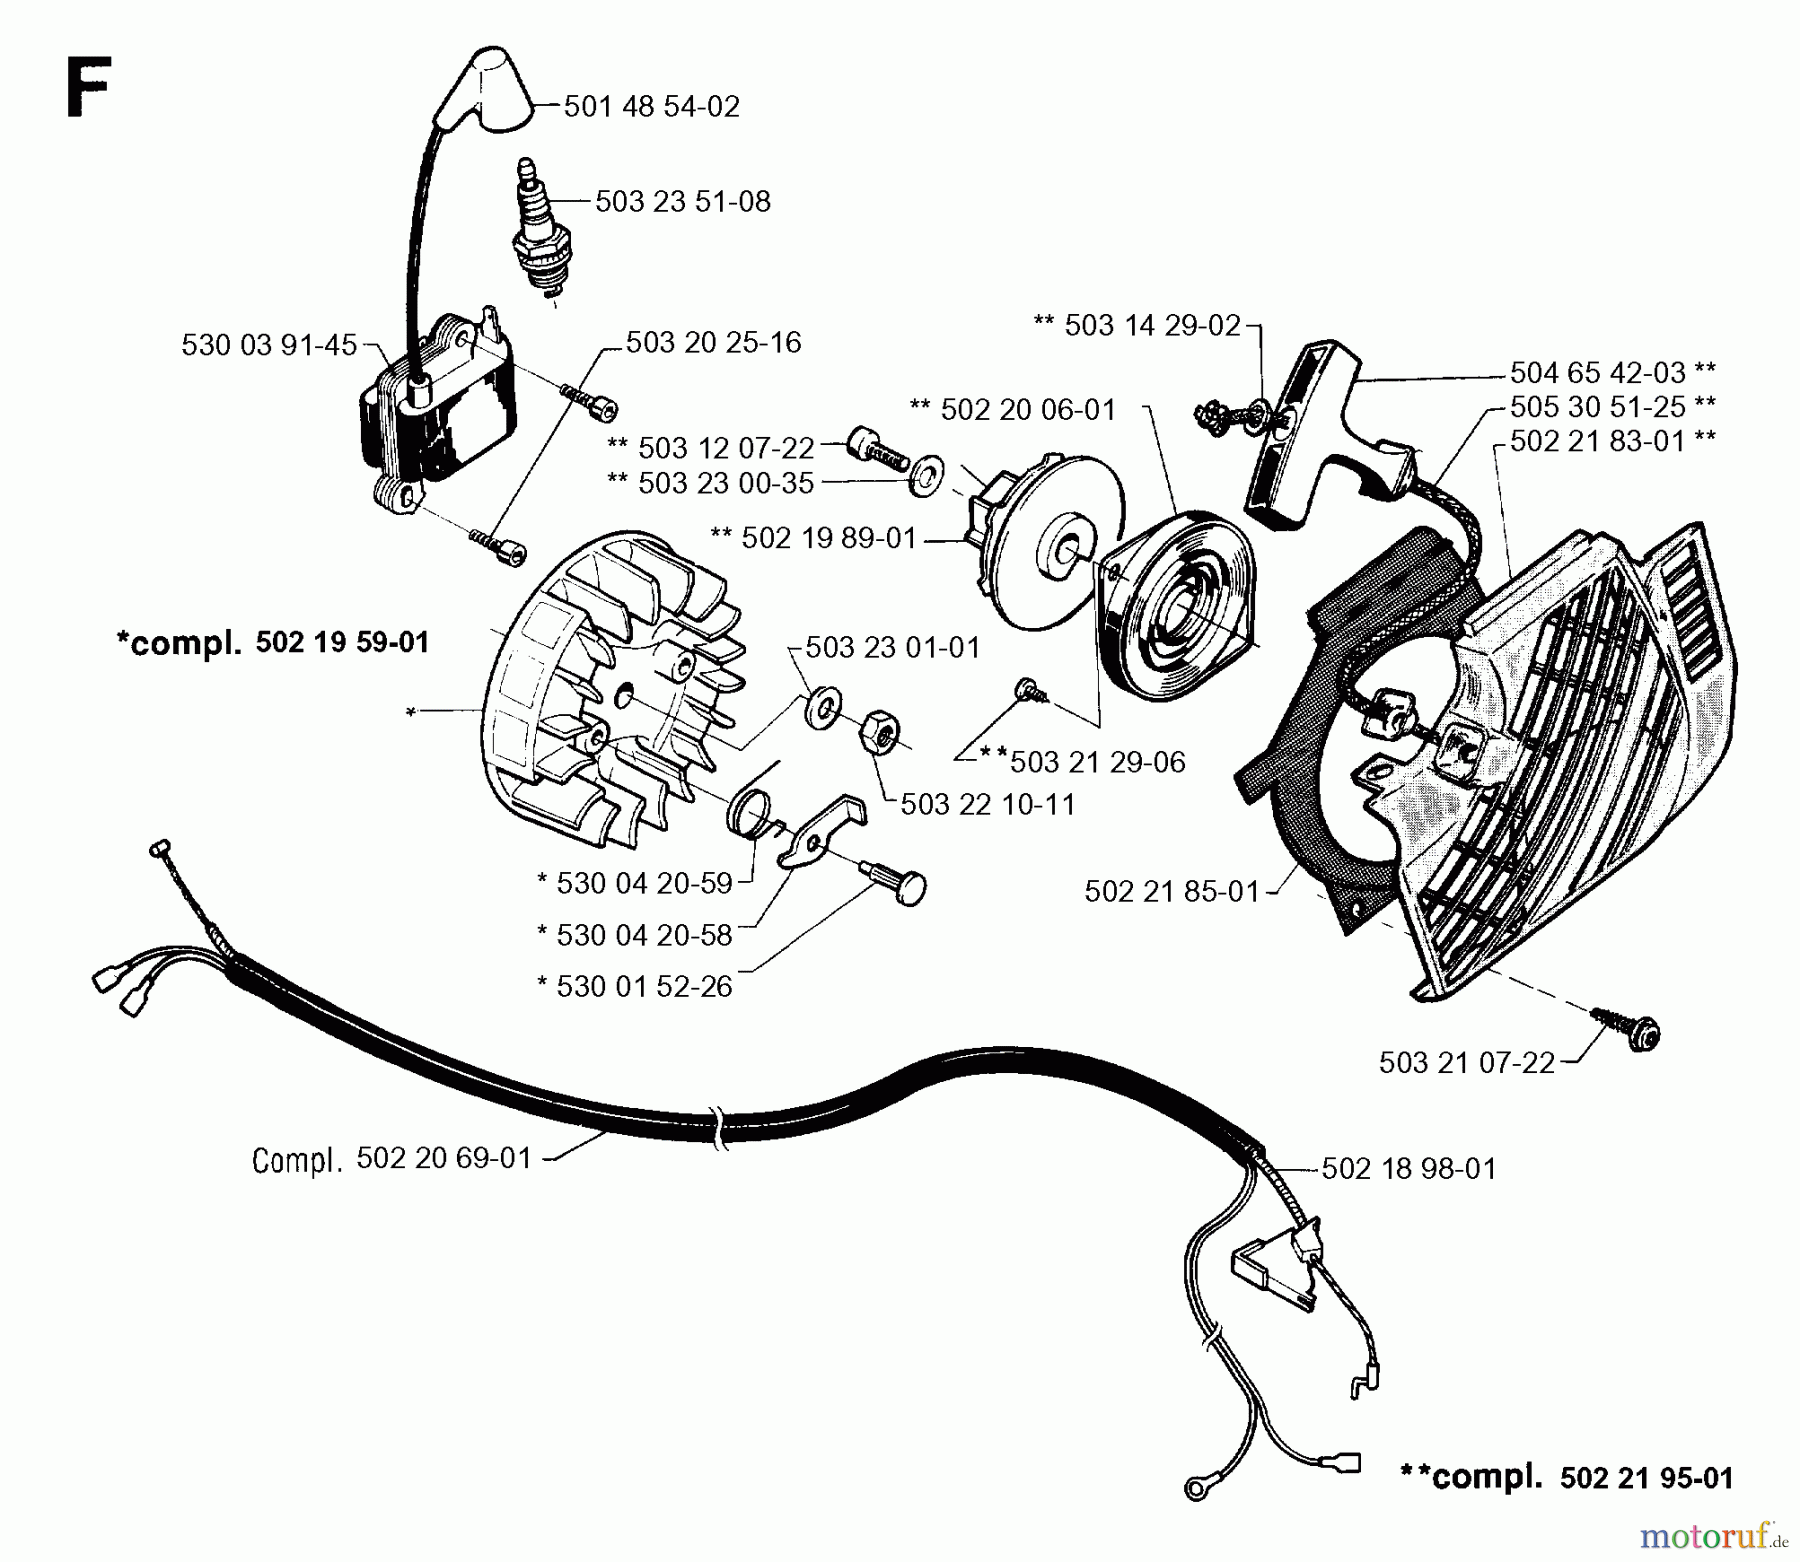  Jonsered Motorsensen, Trimmer GR36 - Jonsered String/Brush Trimmer (1993-03) STARTER